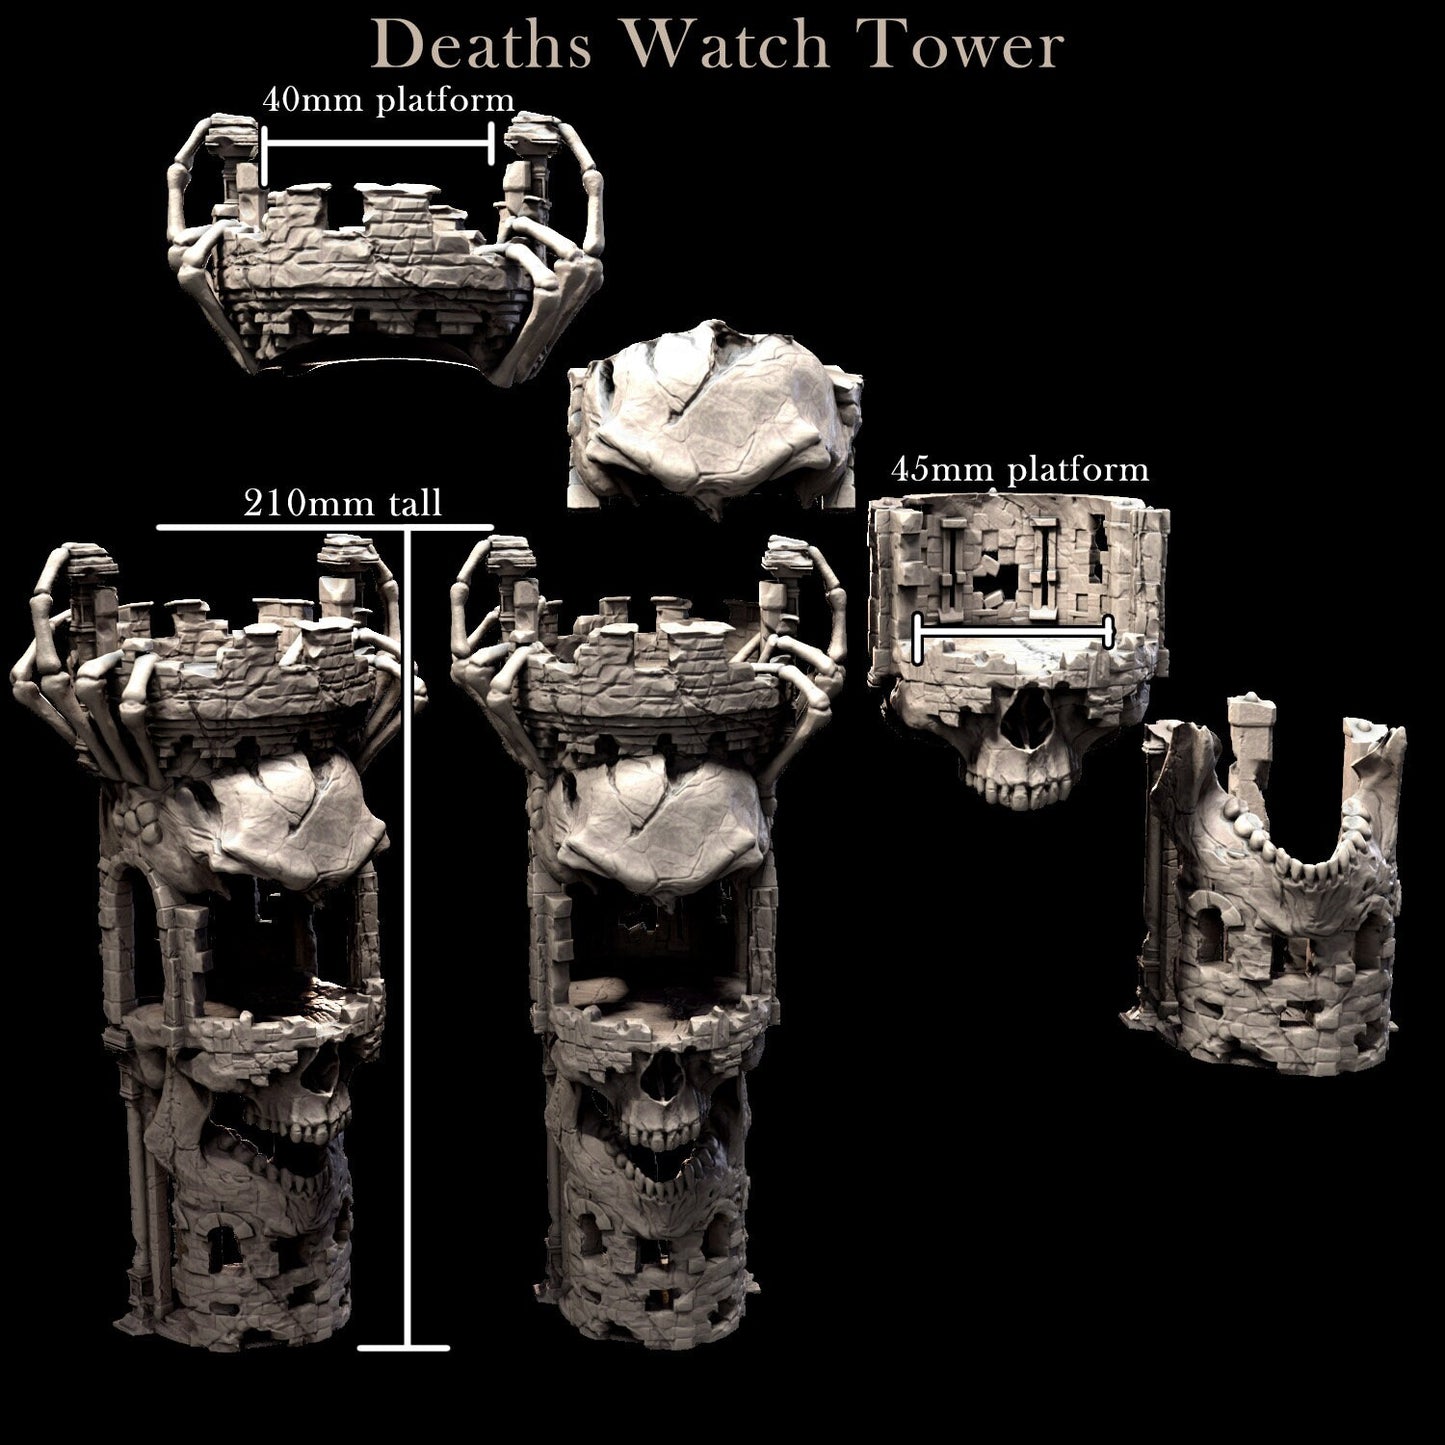 Death's Watch Tower by Mini Monster Mayhem | Please Read Description